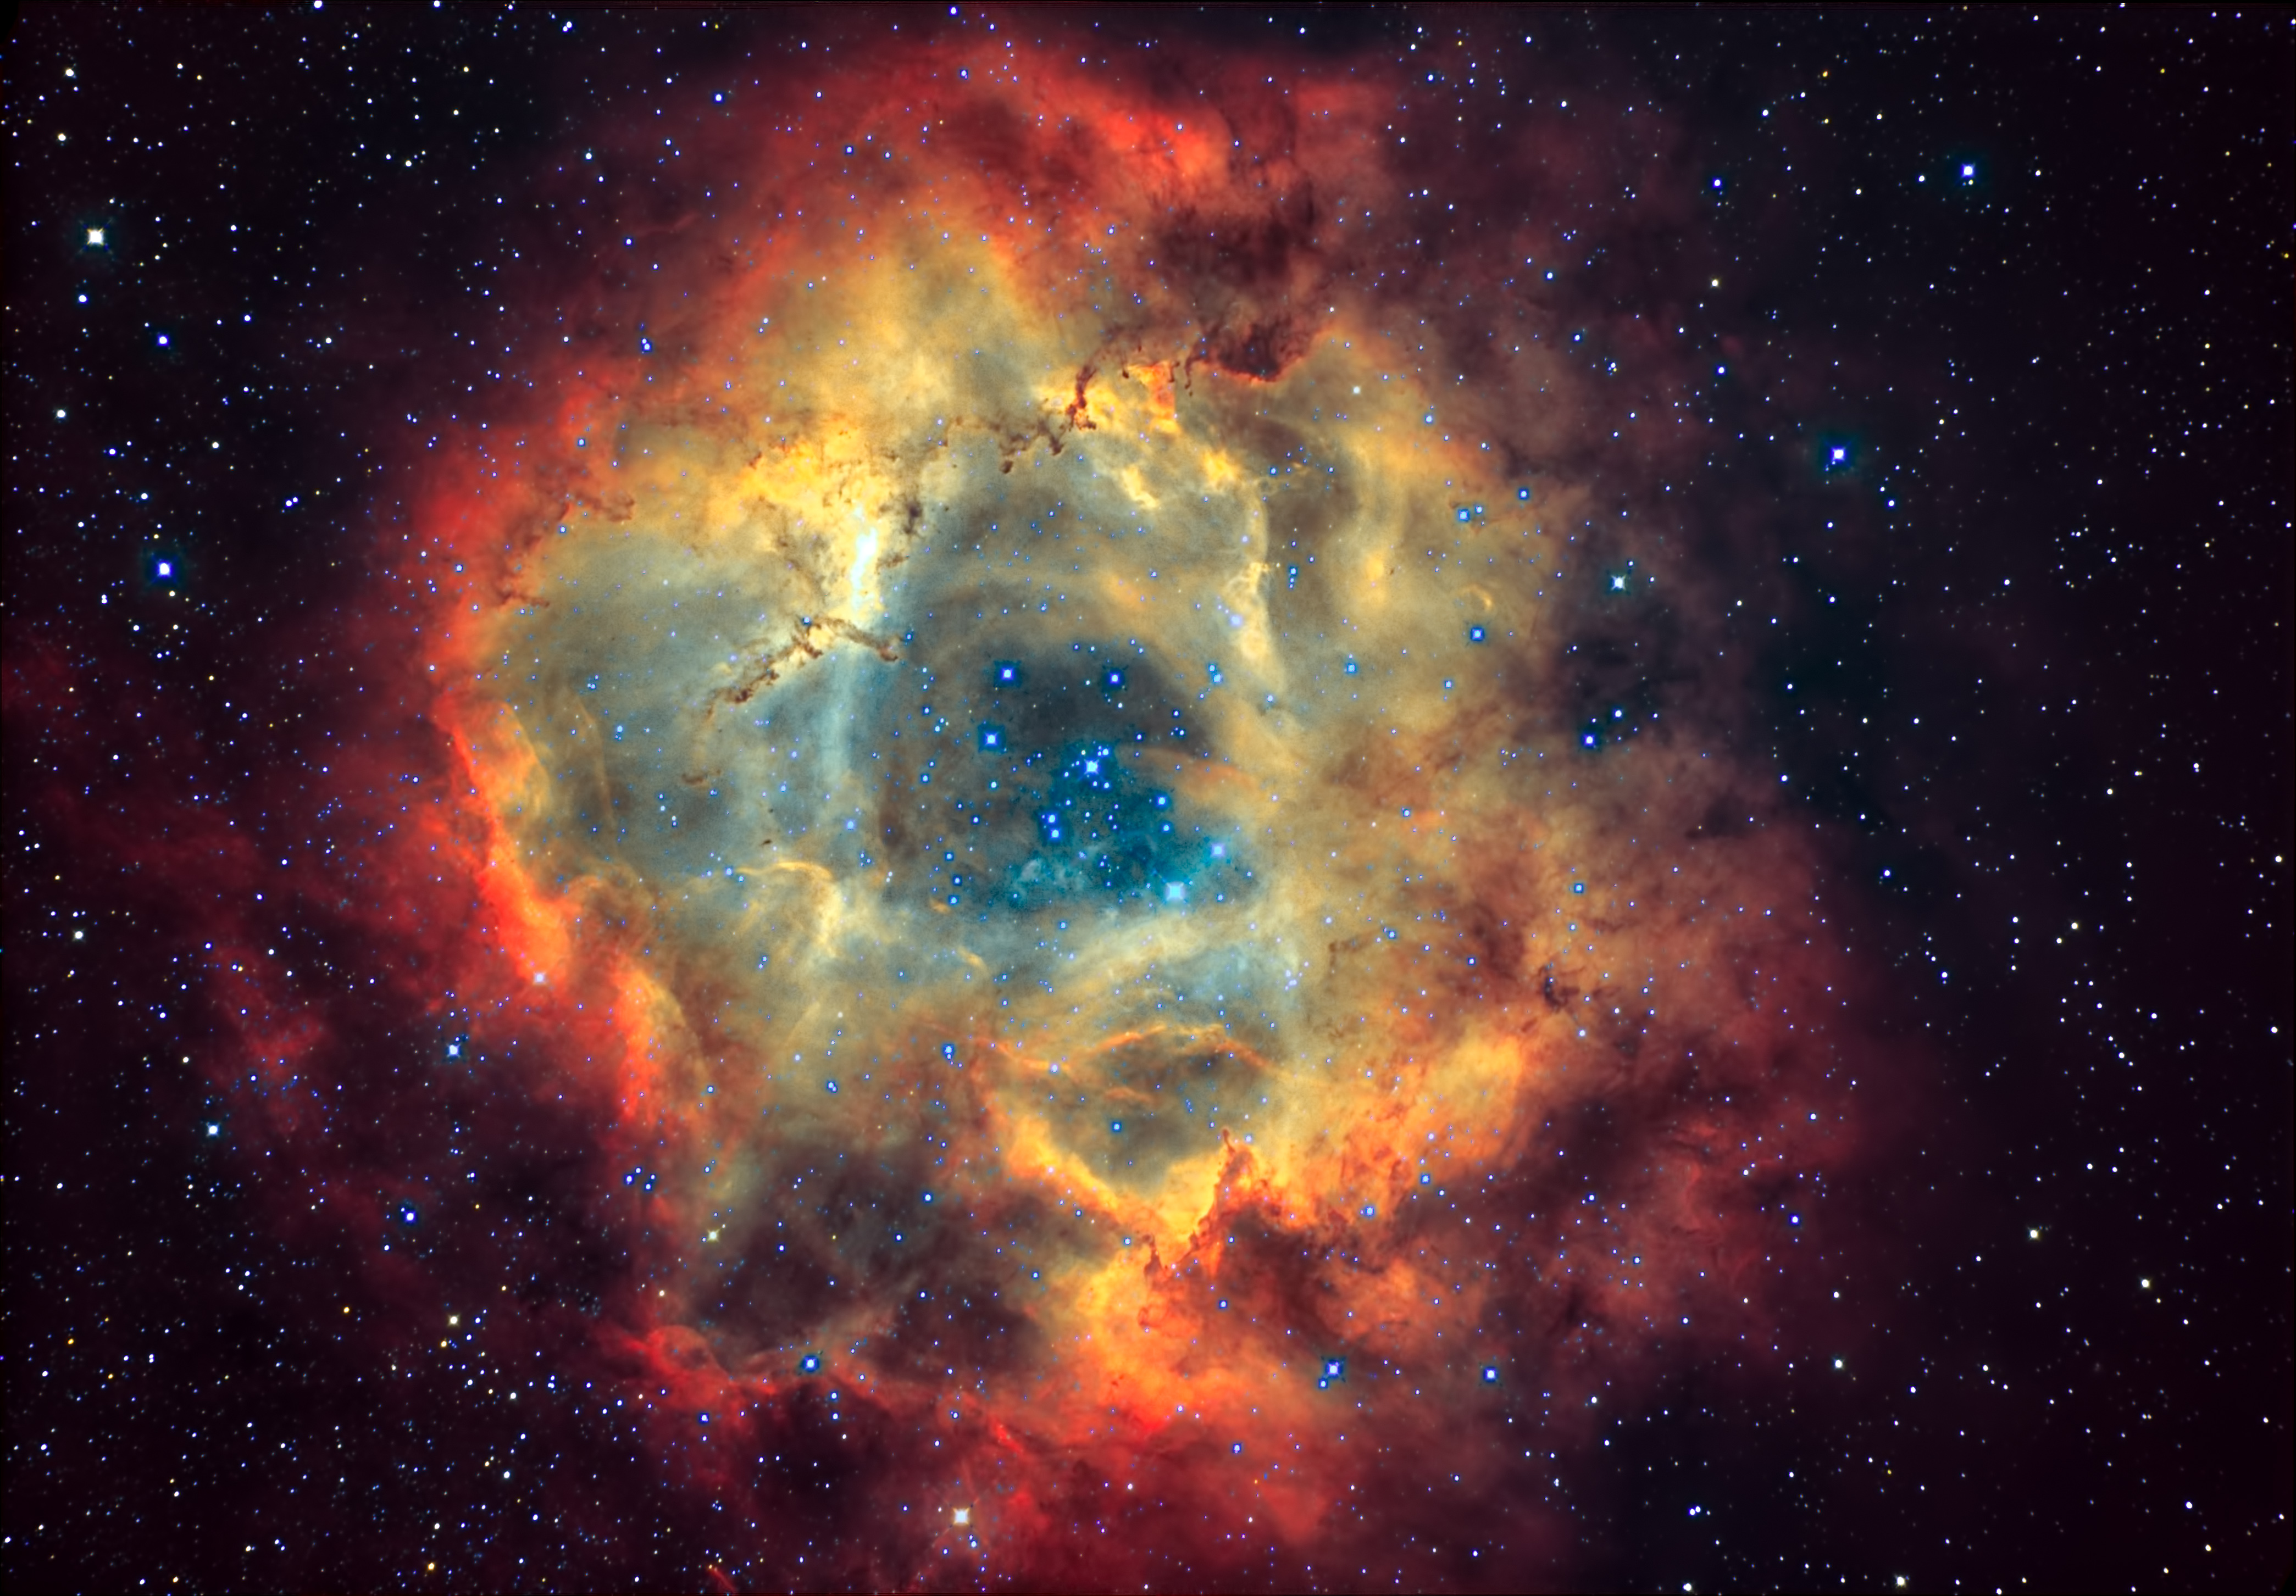 NGC2244-Neut-Select-SCNR2-Nebula-Star-Topaz-JPG.jpg